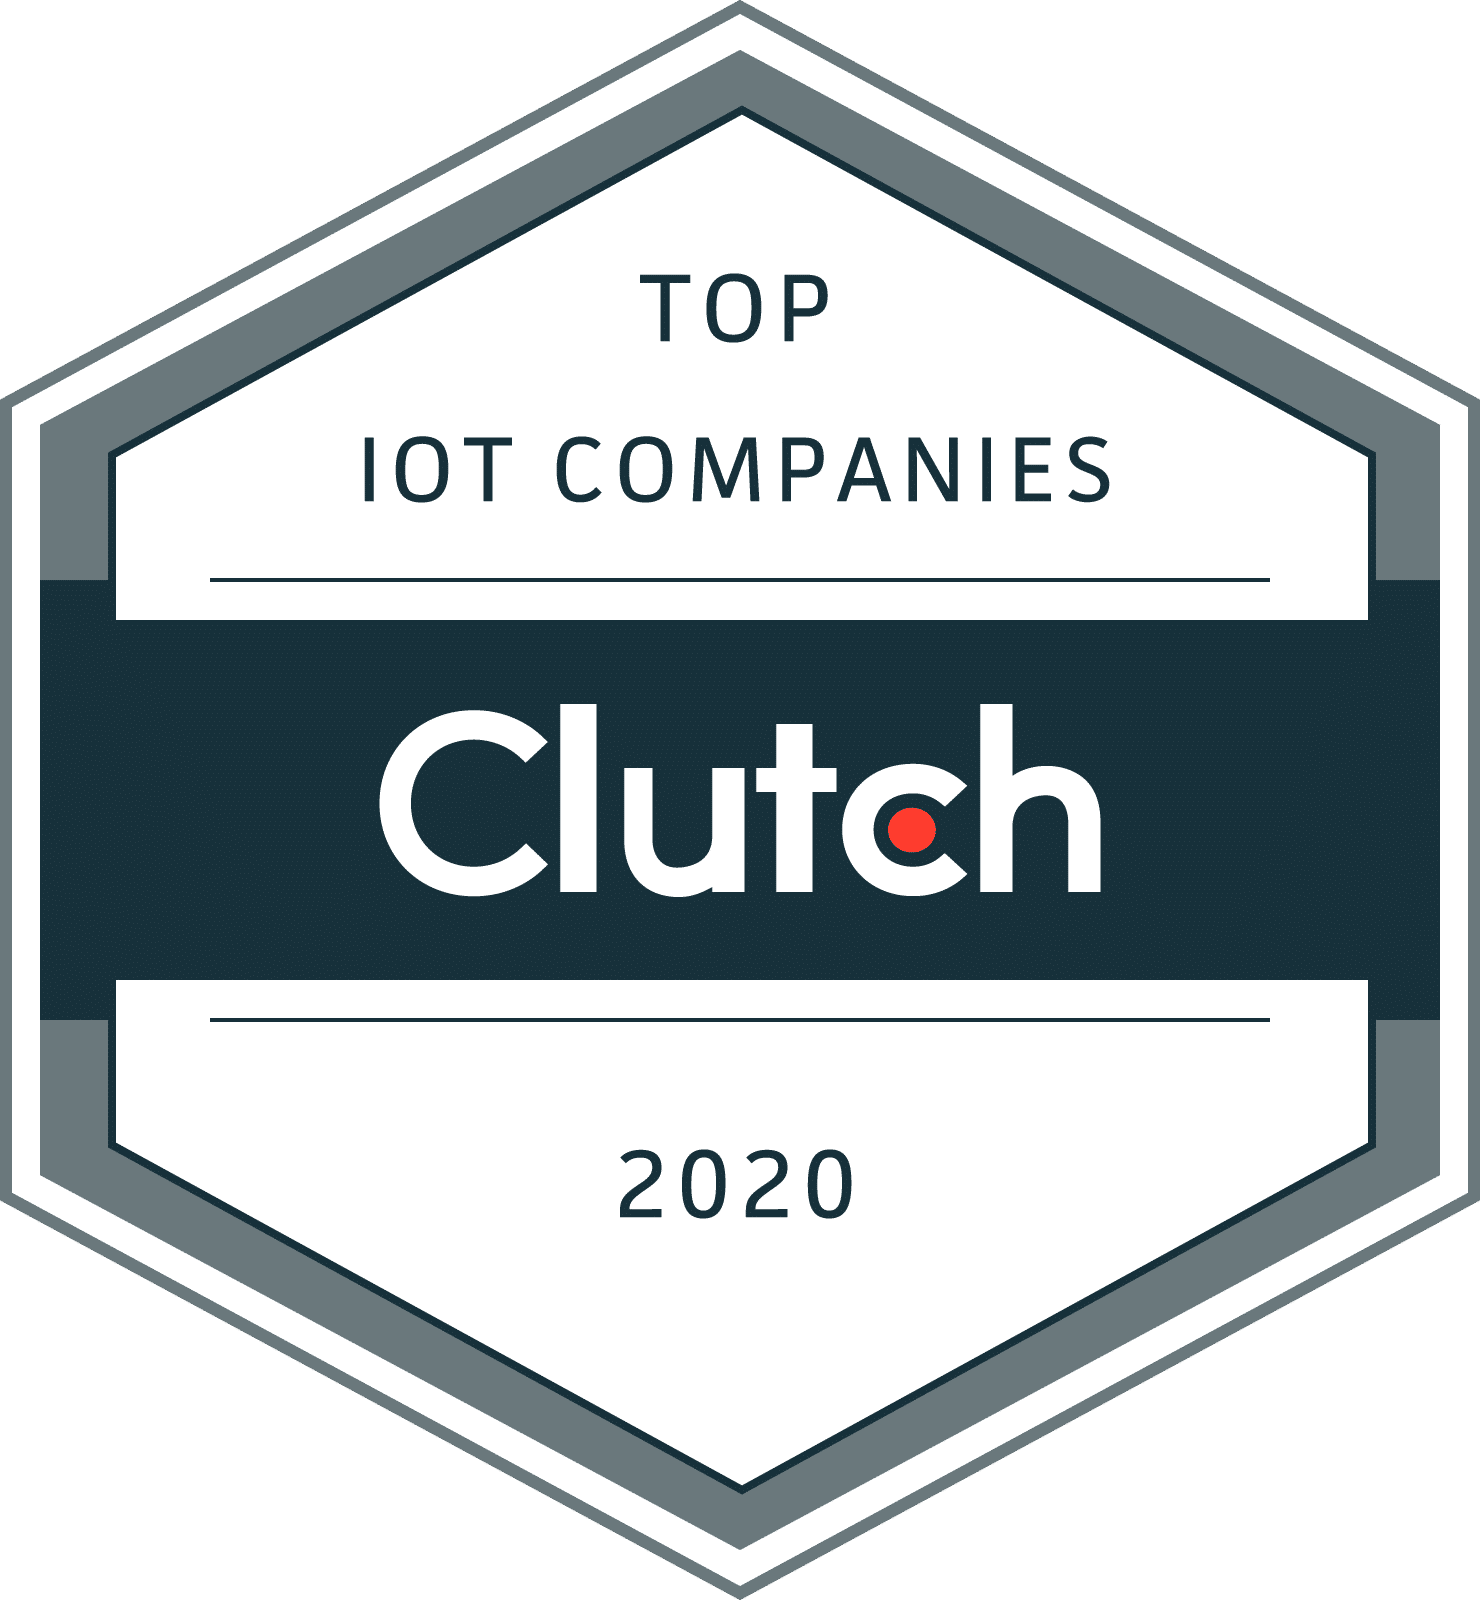 Clutch Top IoT companies 2020